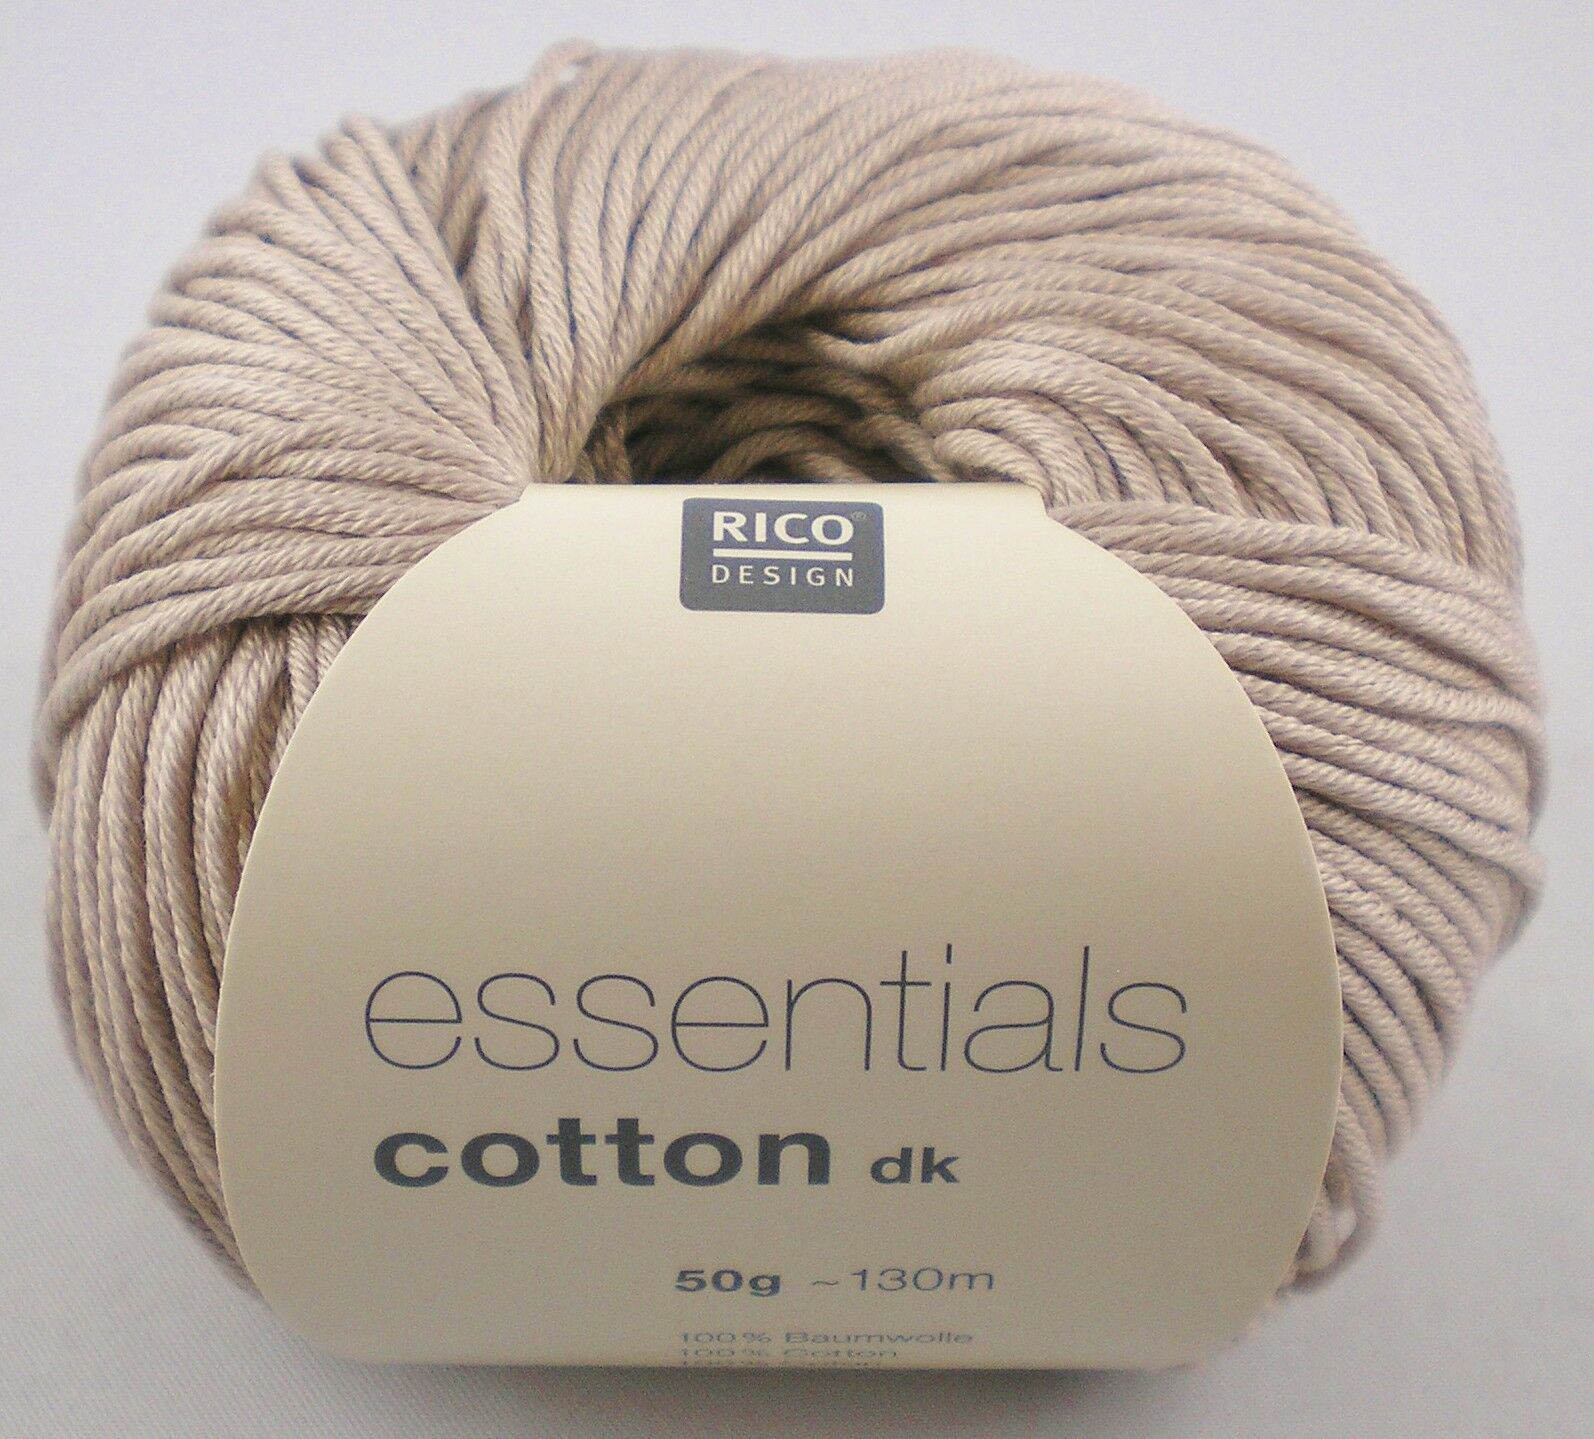 NEUE FARBE 2018 !! 50g Rico Design Essentials Cotton Glitz dk mit eingearbeitetem Glitzerfaden Farbe 12 mint